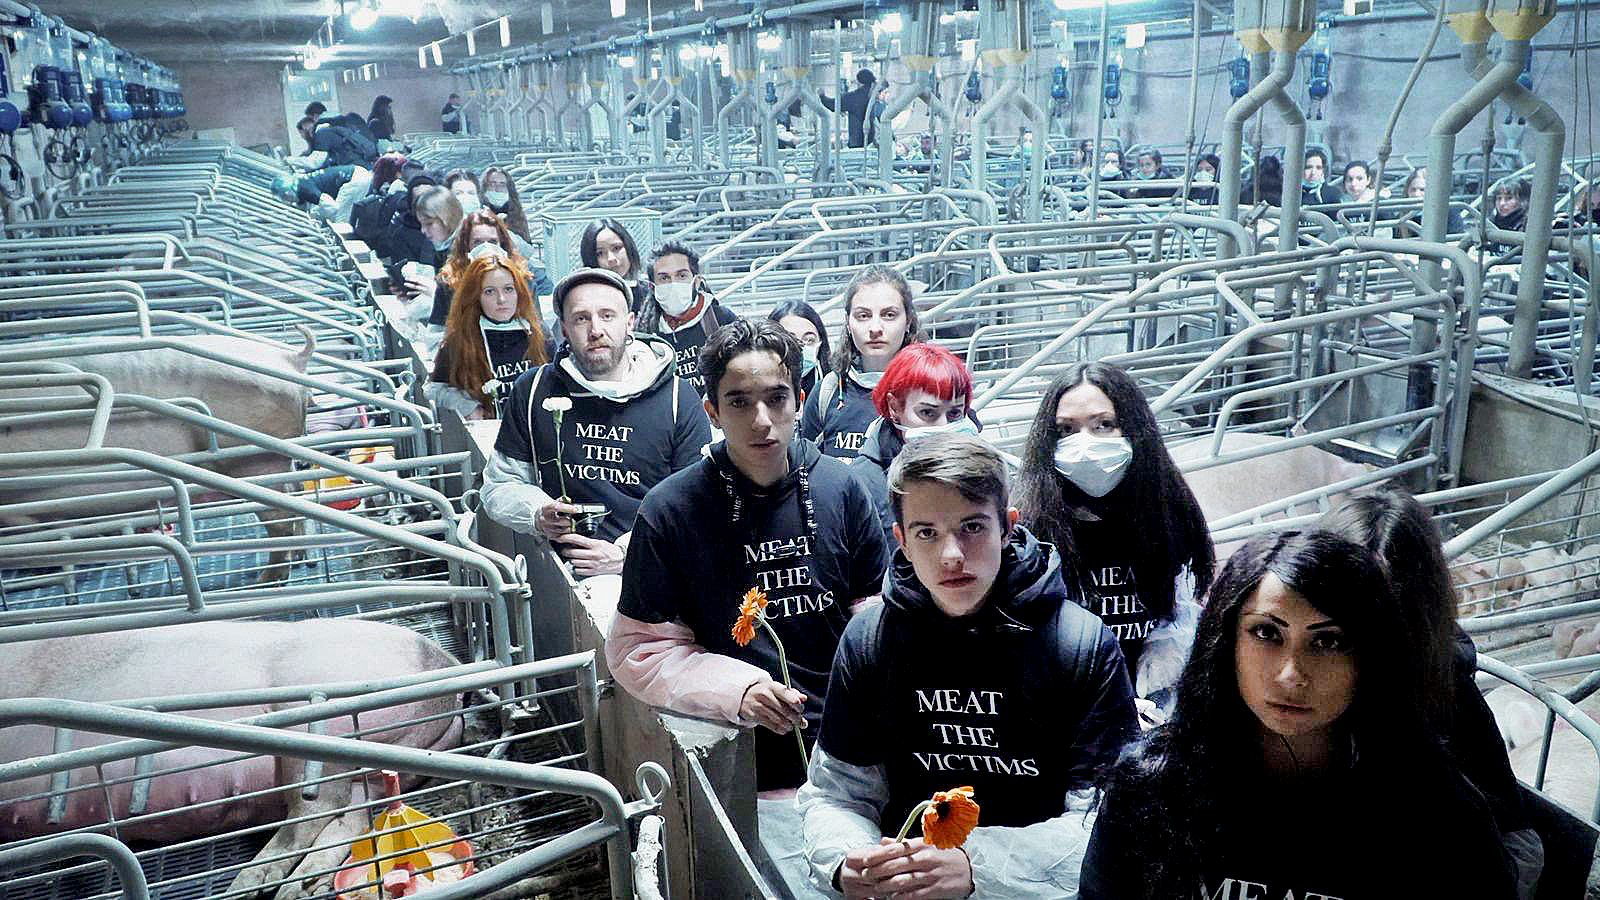 Els activistes animalistes de Meat the Victims diumenge passat a la granja de Sant Pere de Vilamajor